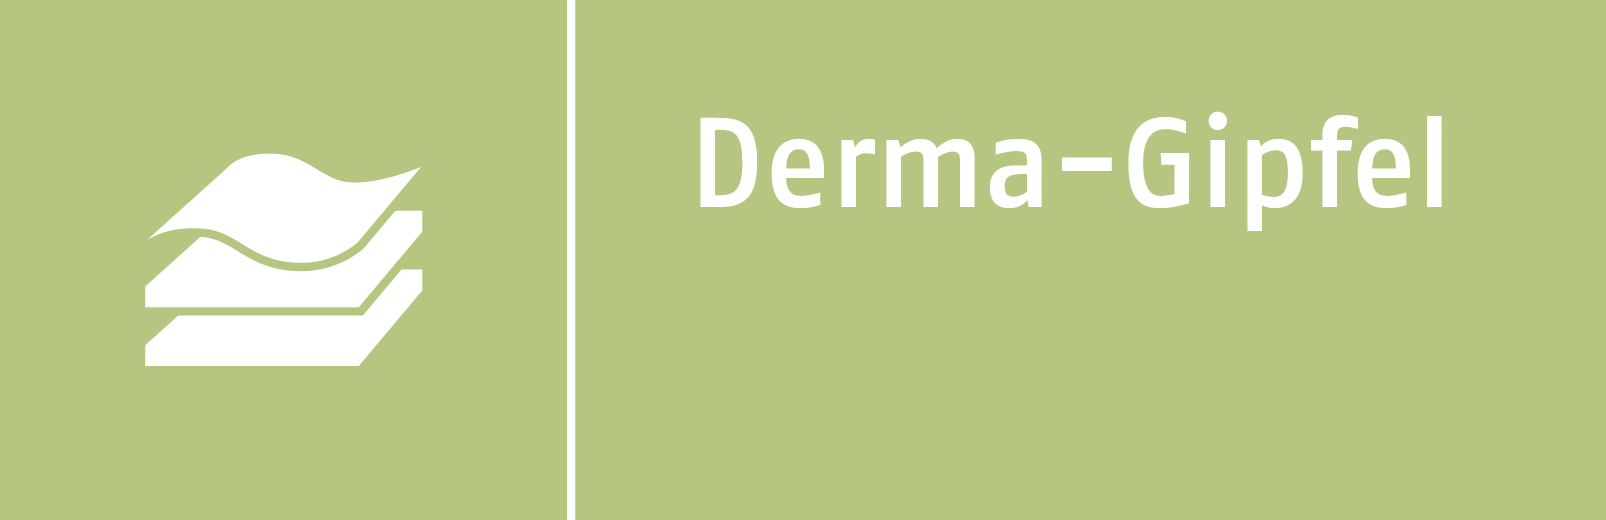 Derma-Gipfel